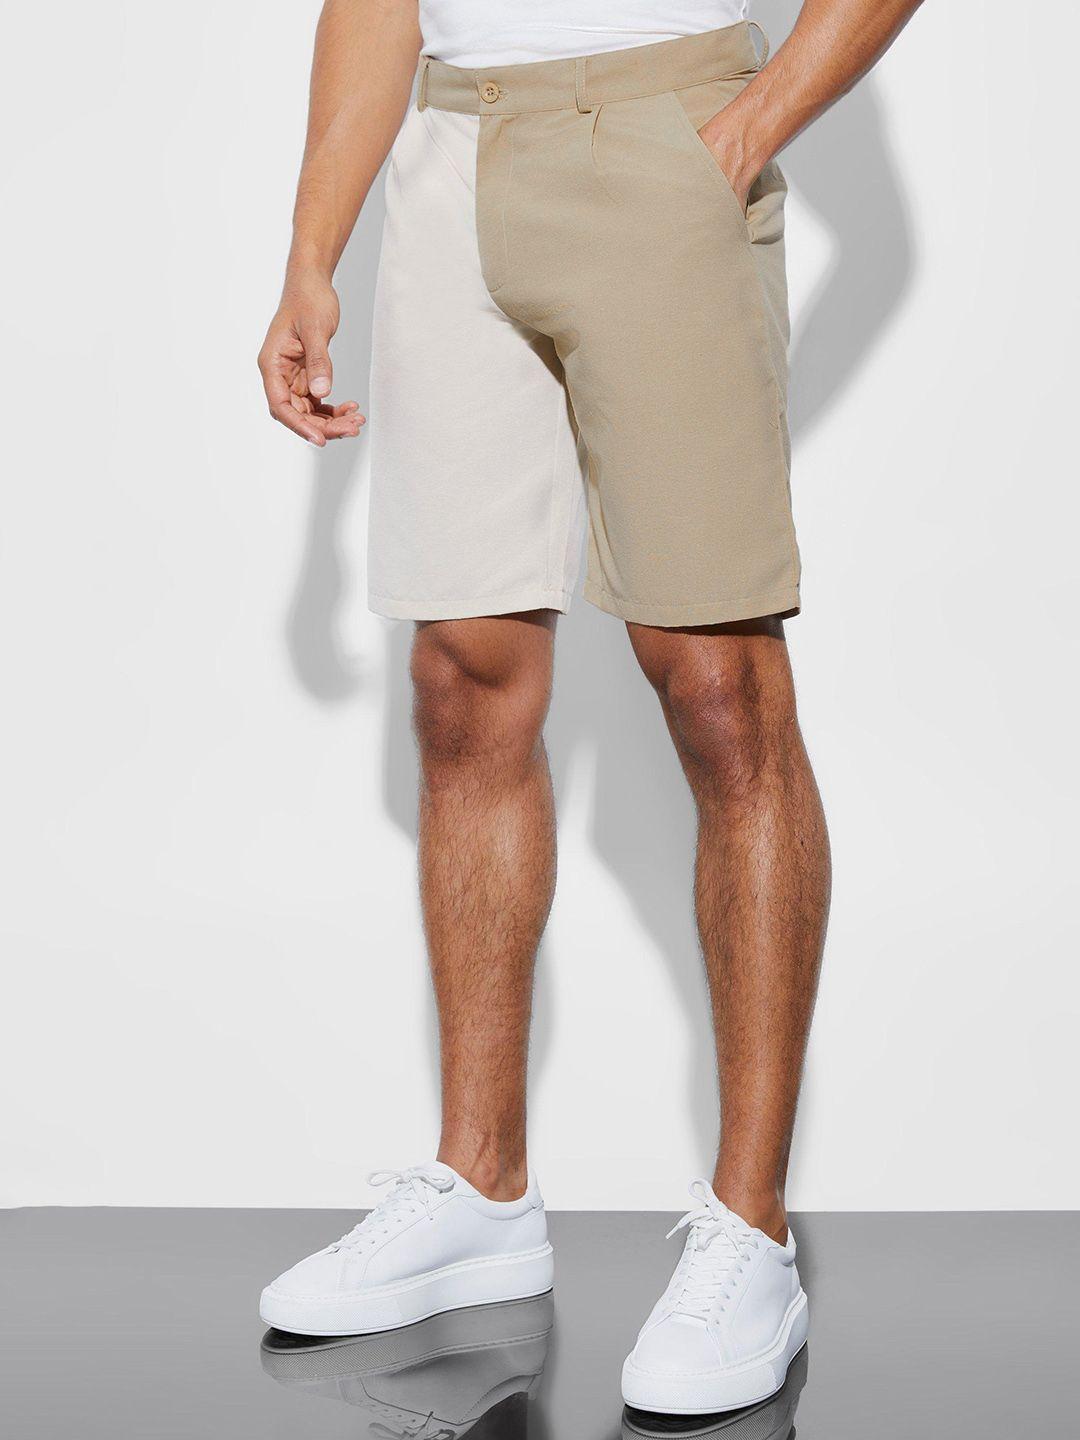 boohooman colourblocked casual shorts